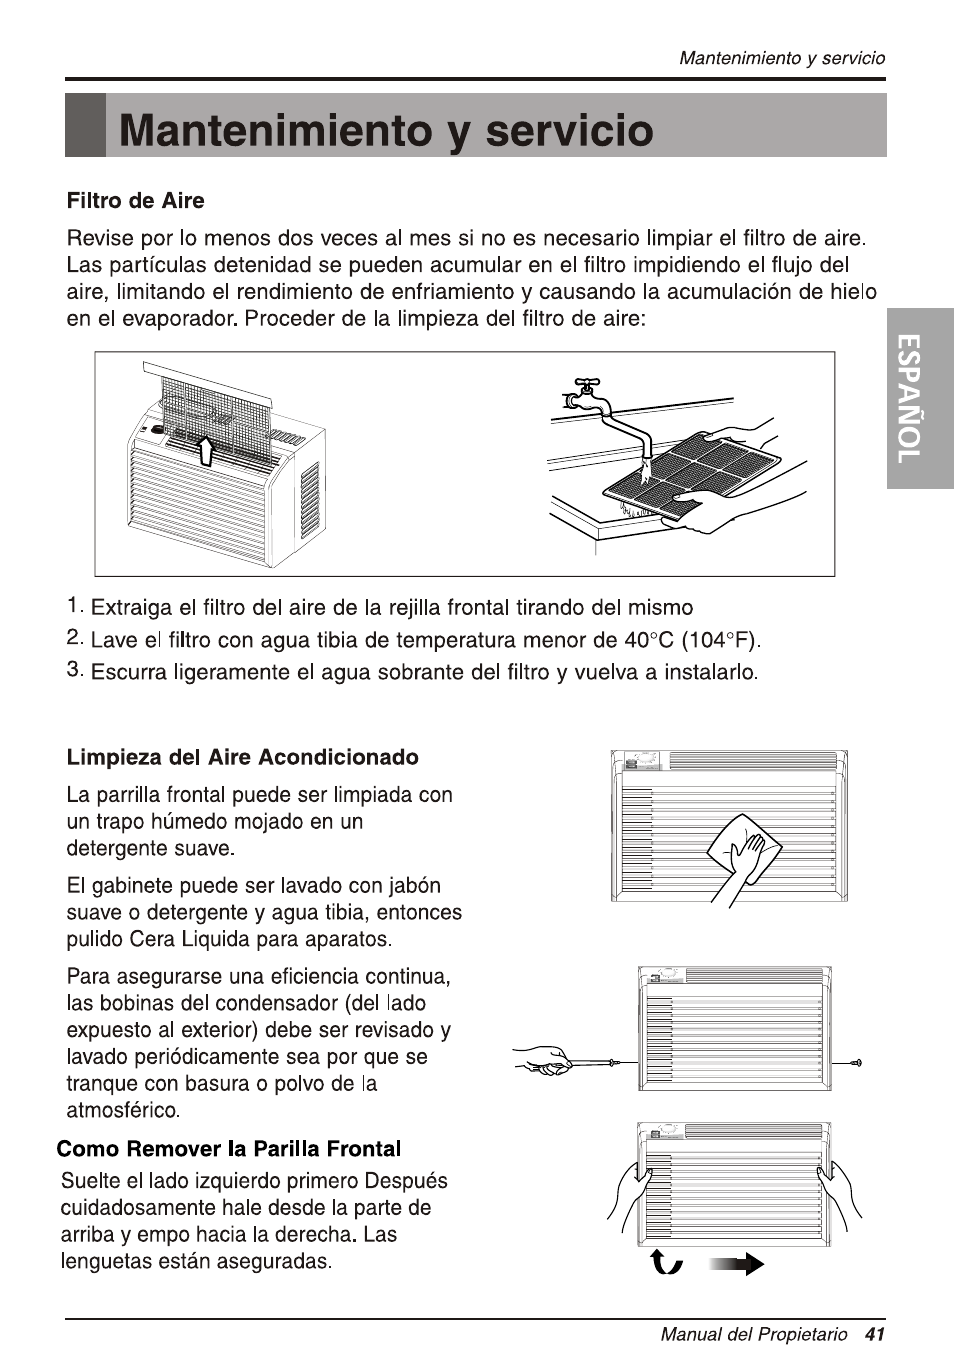 B mantenimiento y servicio, Filtro de aire, Limpieza del aire acondicionado  | LG WG5005R User Manual | Page 41 / 44 | Original mode